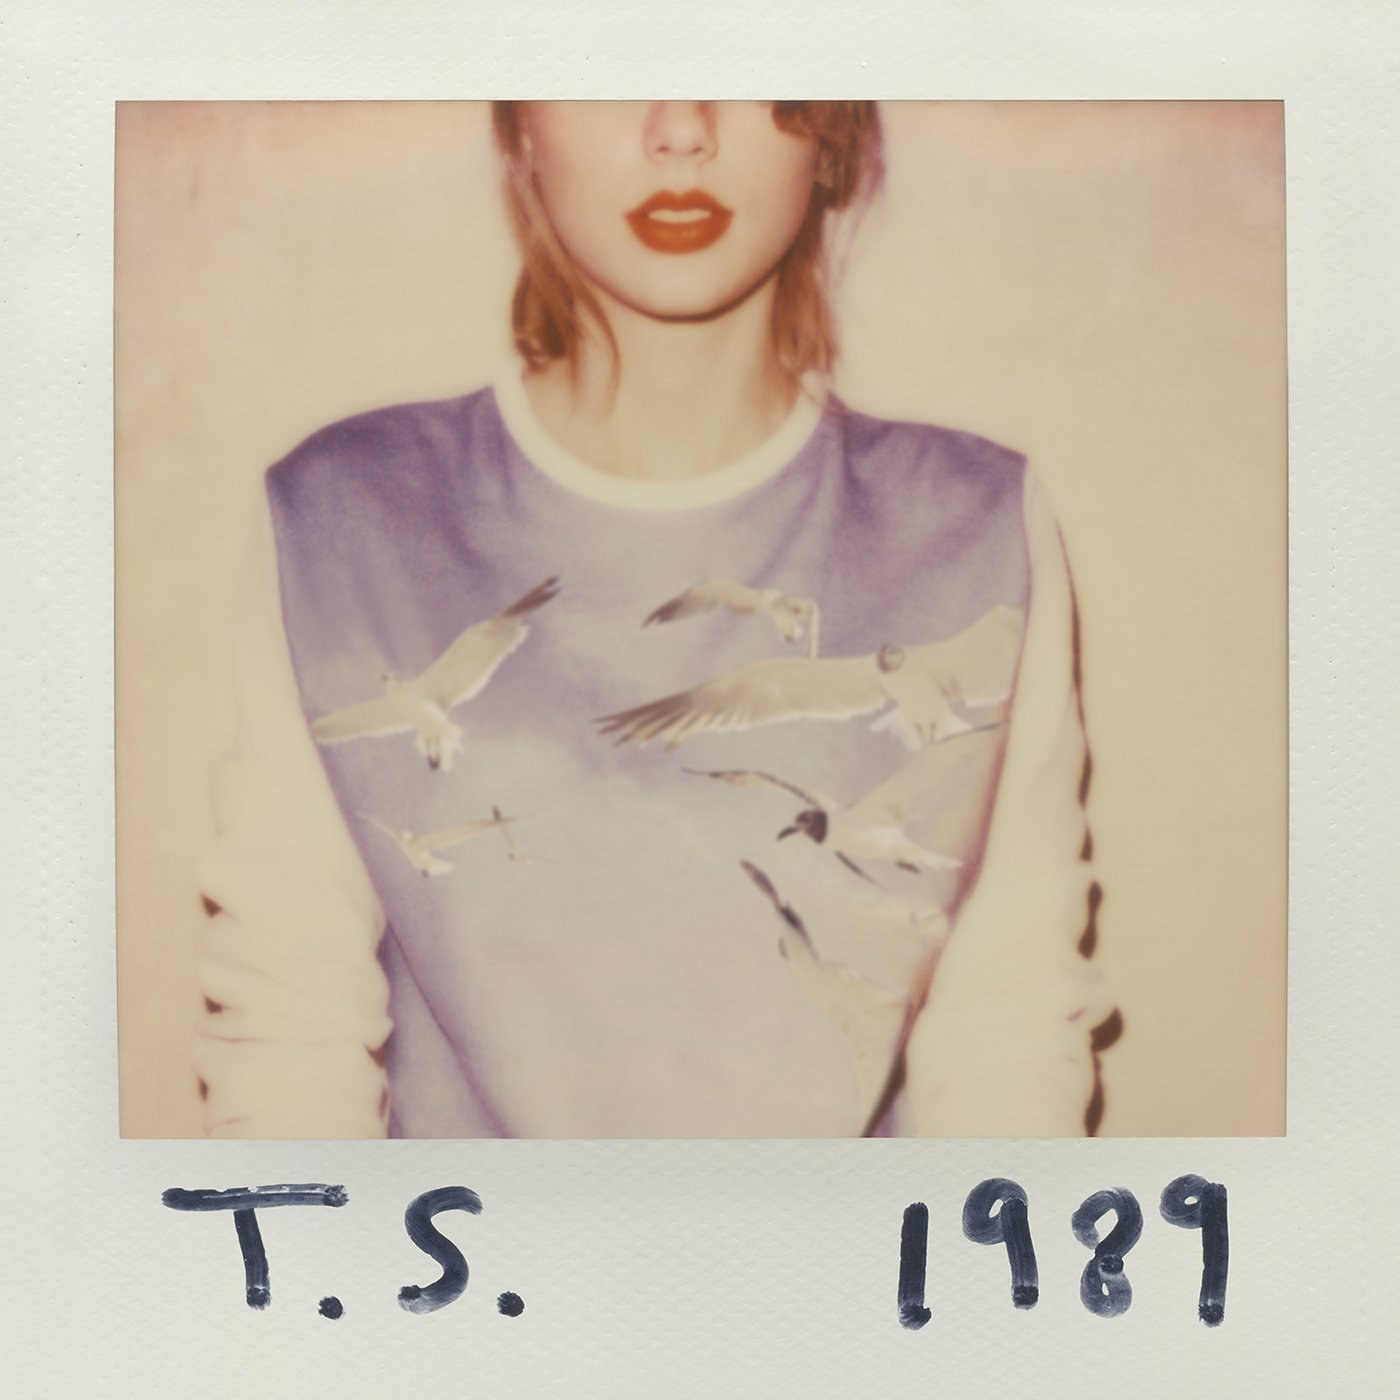 Swift&#x27;s &quot;1989&quot; album cover